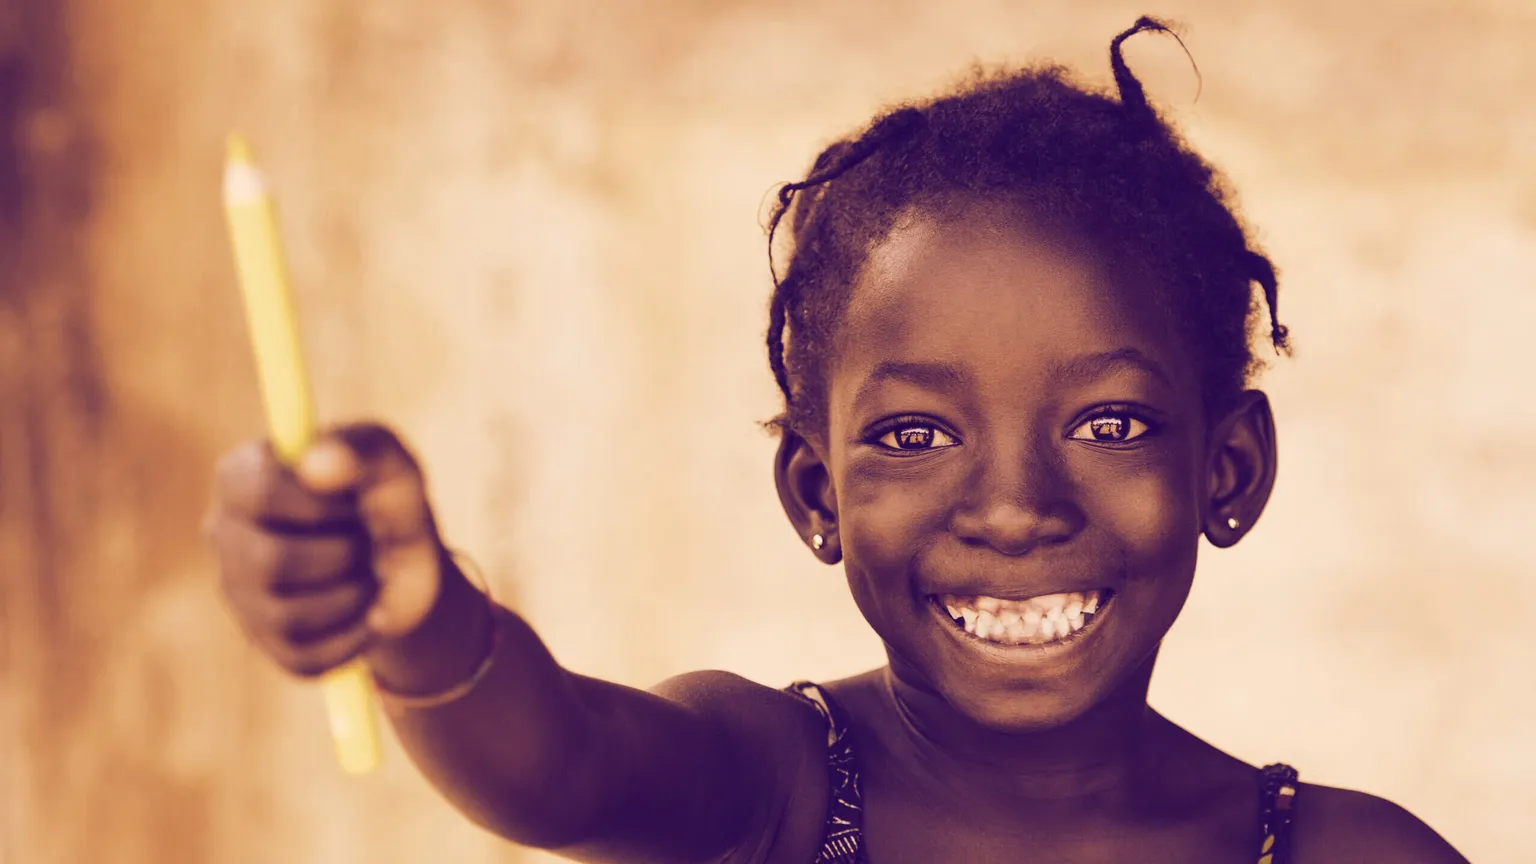 El África subsahariana tiene las tasas más altas de exclusión de la educación. Imagen: Shutterstock